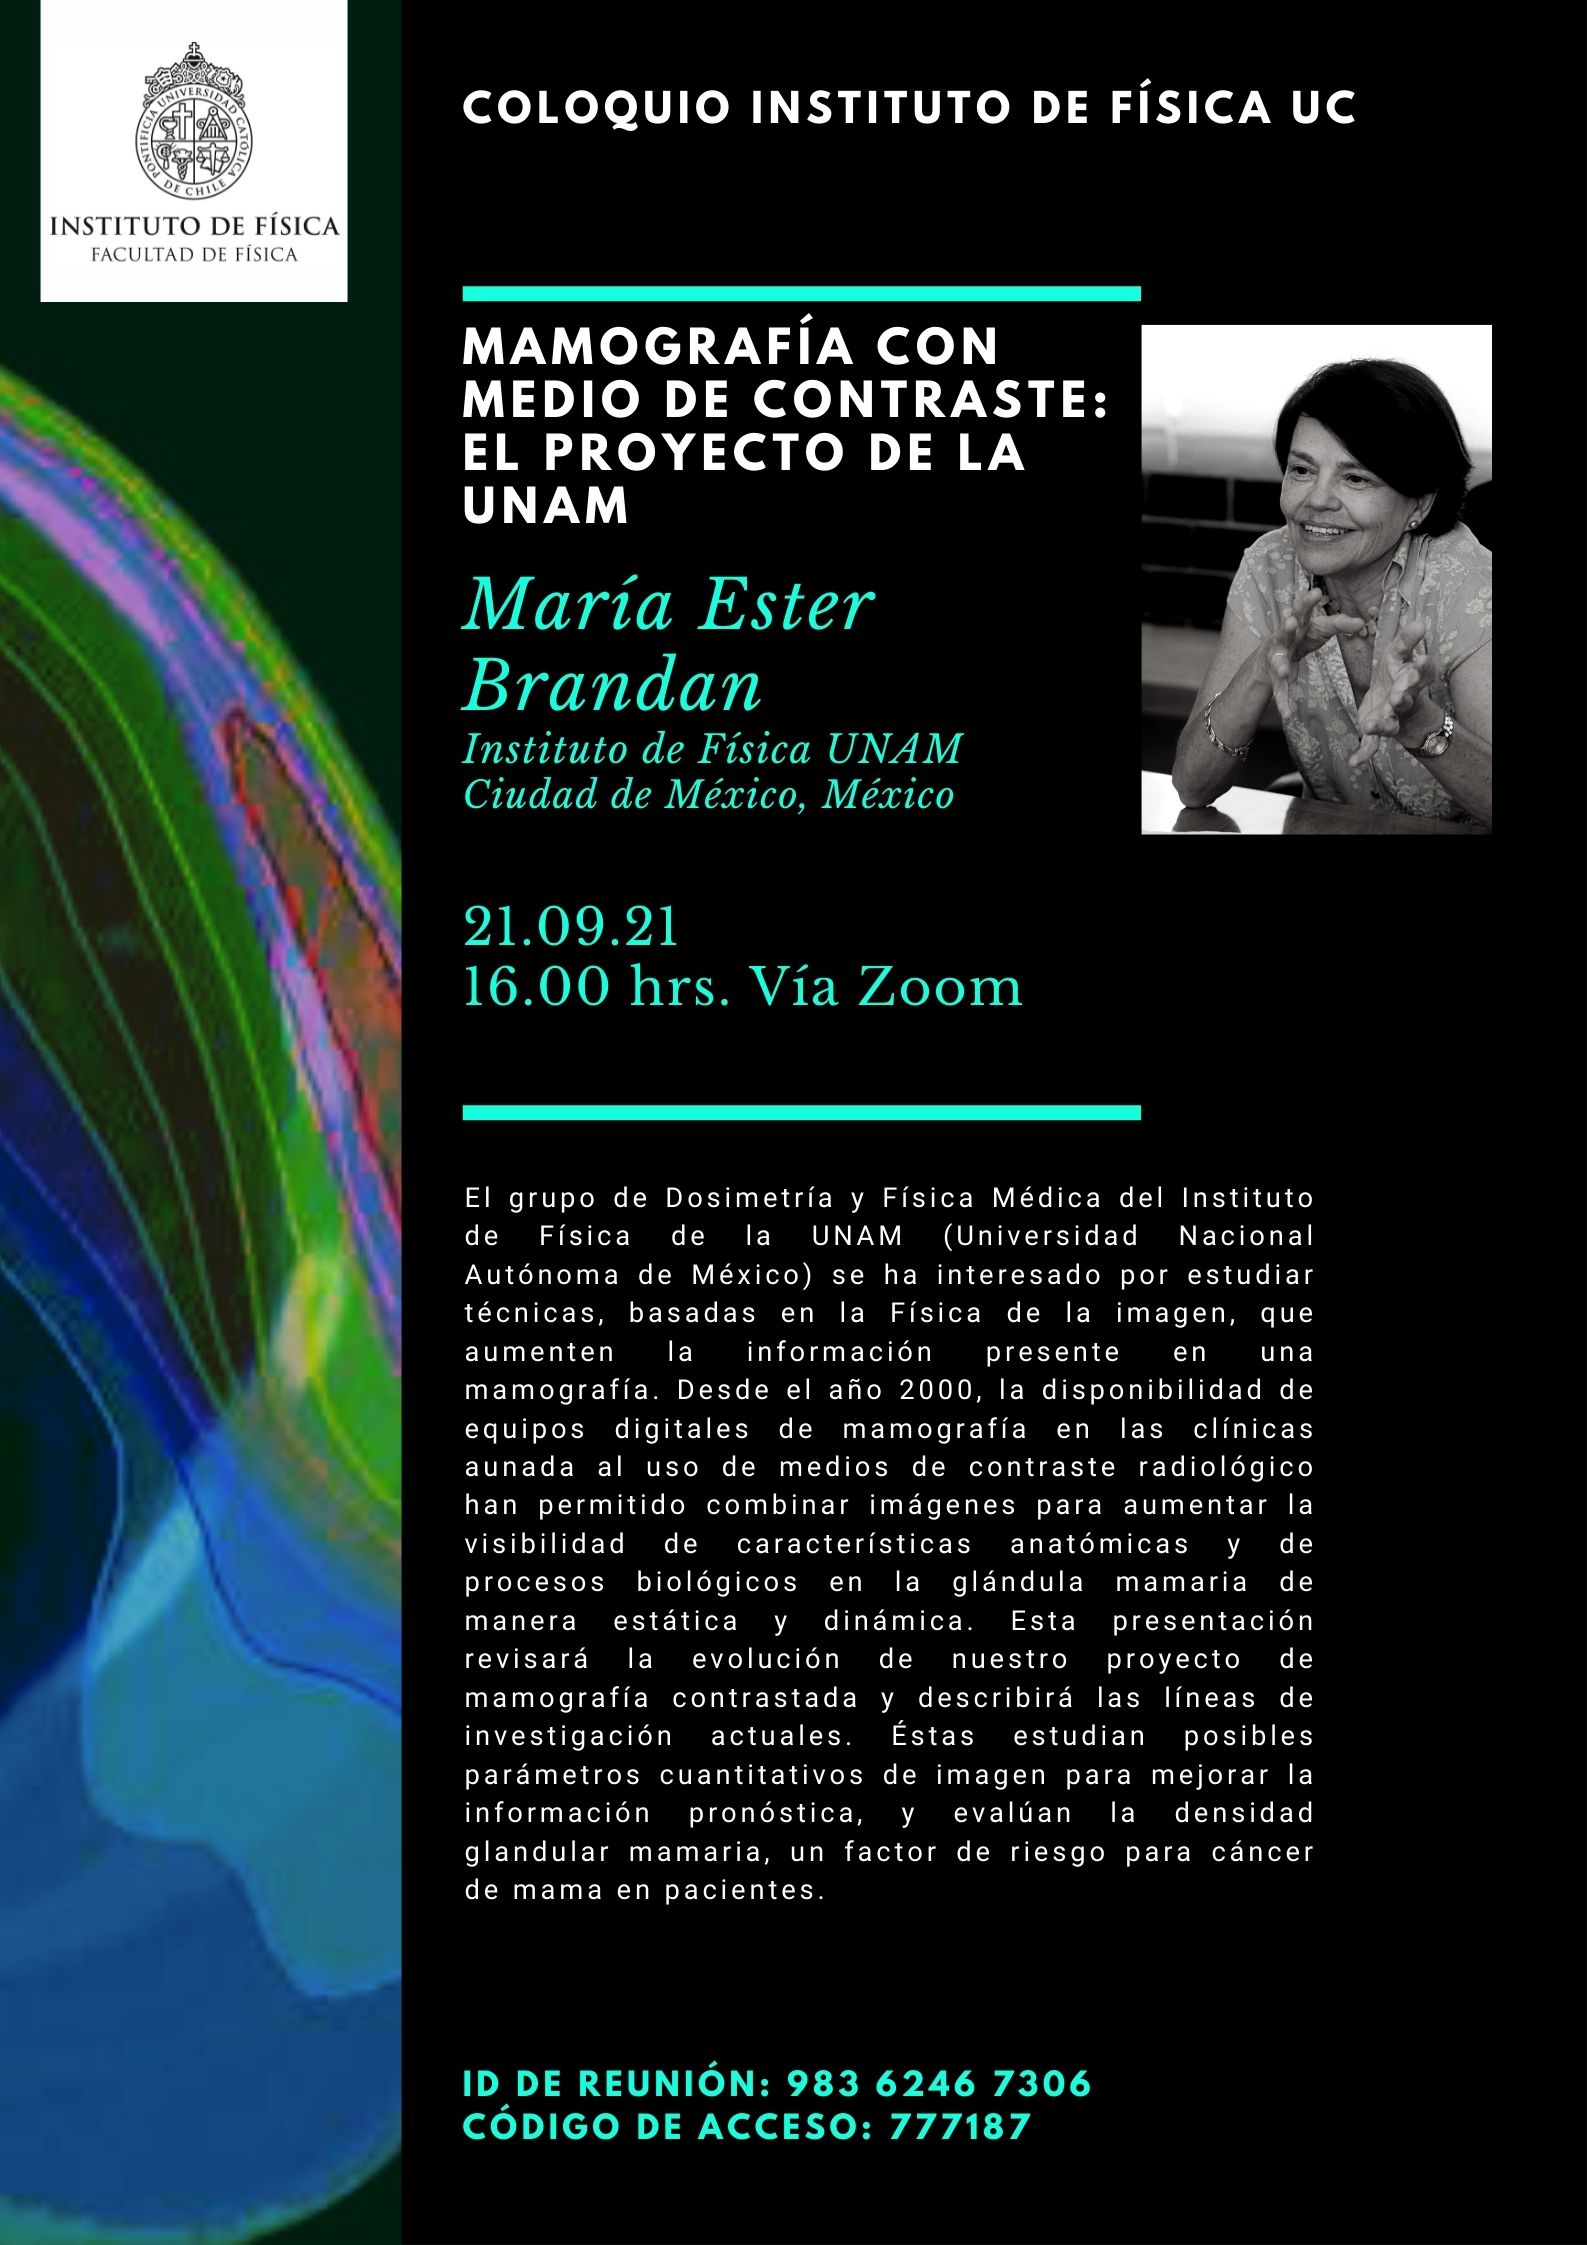 Invitación a coloquio 21.09.21: &quot;Mamografía con medio de contraste: El proyecto de la UNAM&quot;, por María Ester Brandan